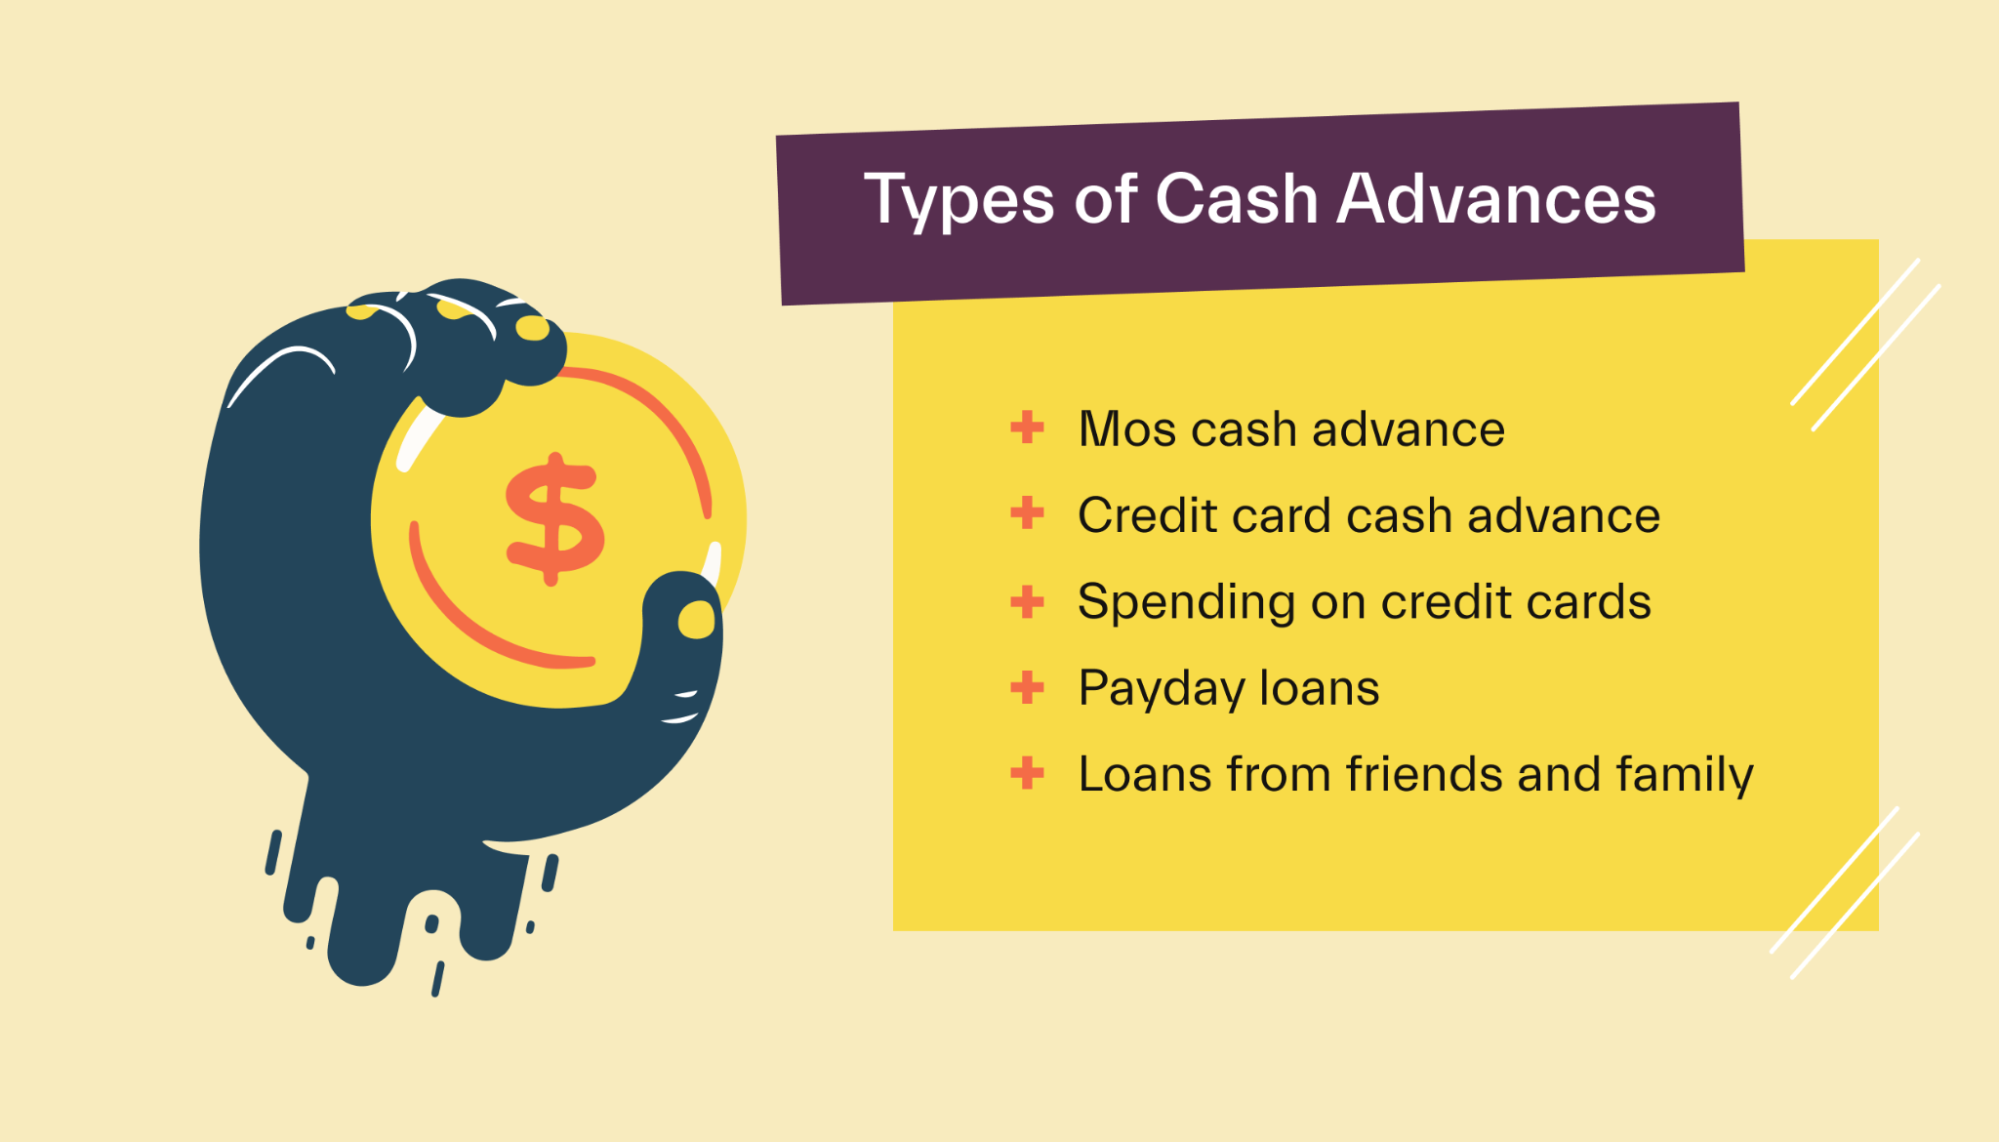 Types of cash advances